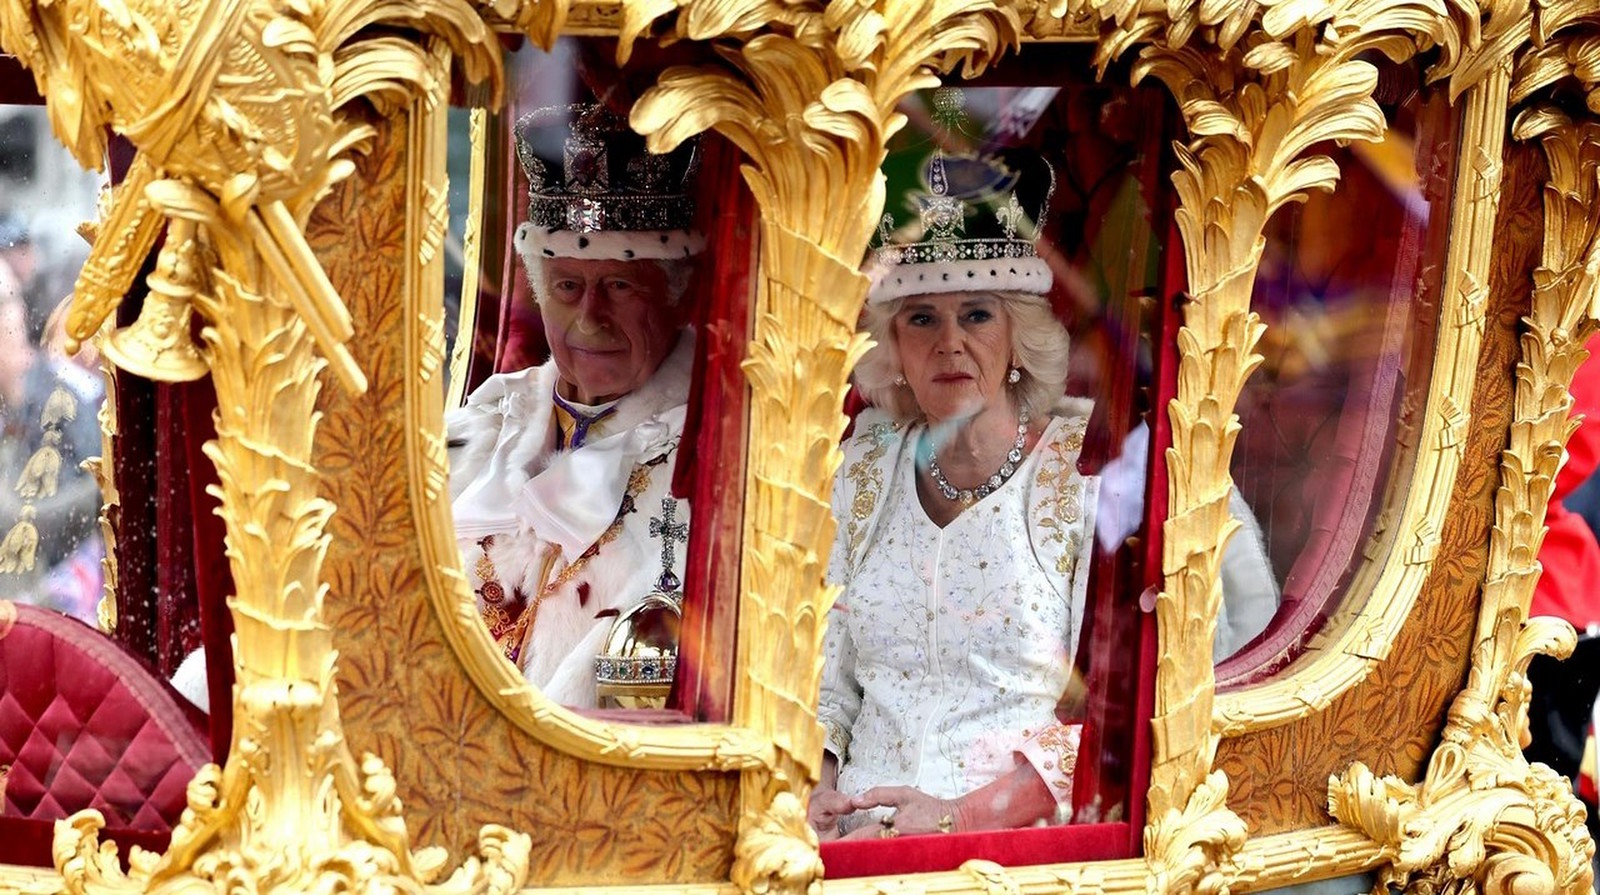 Con pompa y solemnidad, Carlos y Camila son coronados reyes del Reino Unido